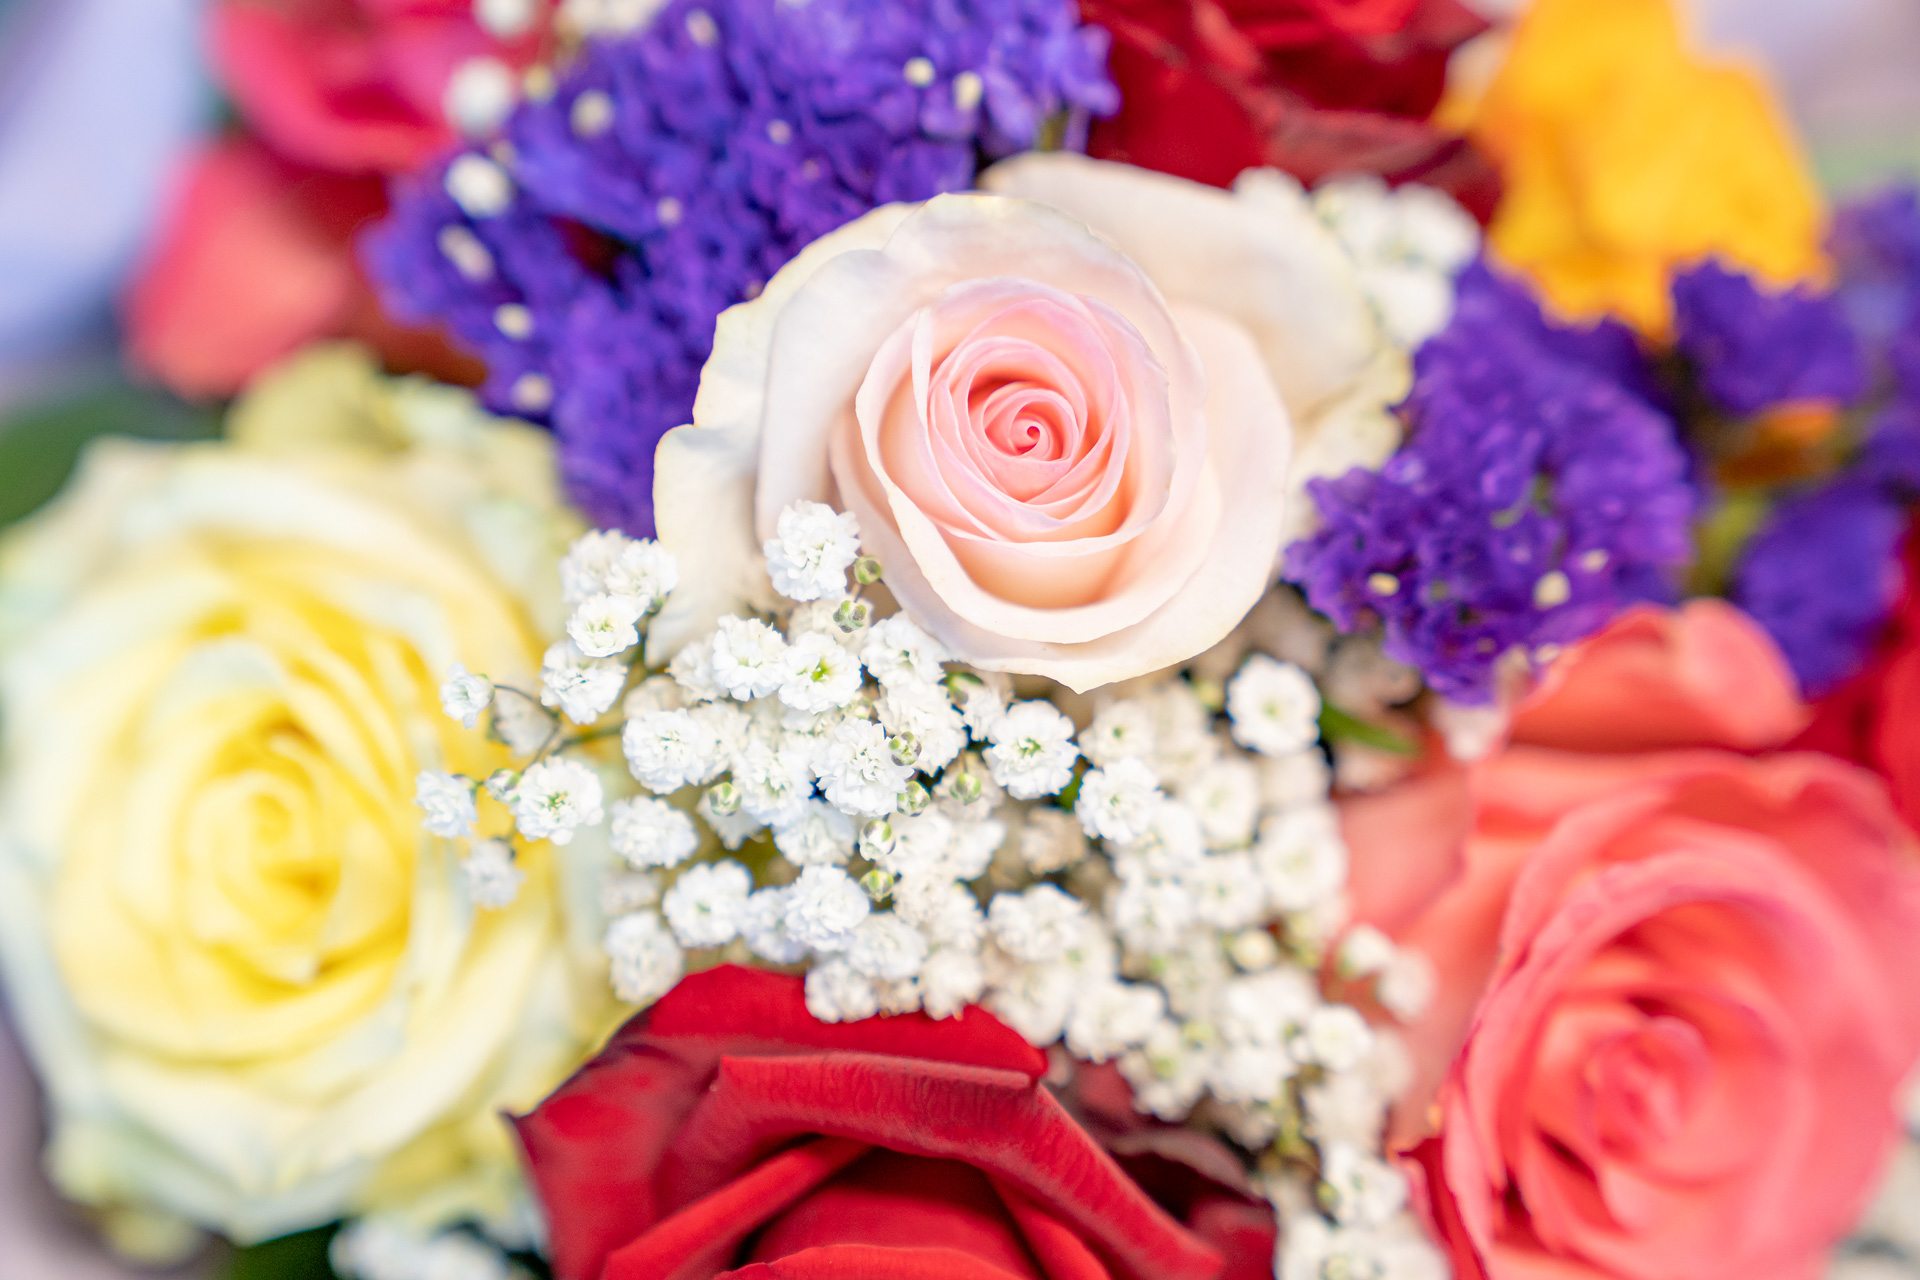 Blumenwerkstatt Rippel Schnittblumen Floristik Hochzeitgestecke